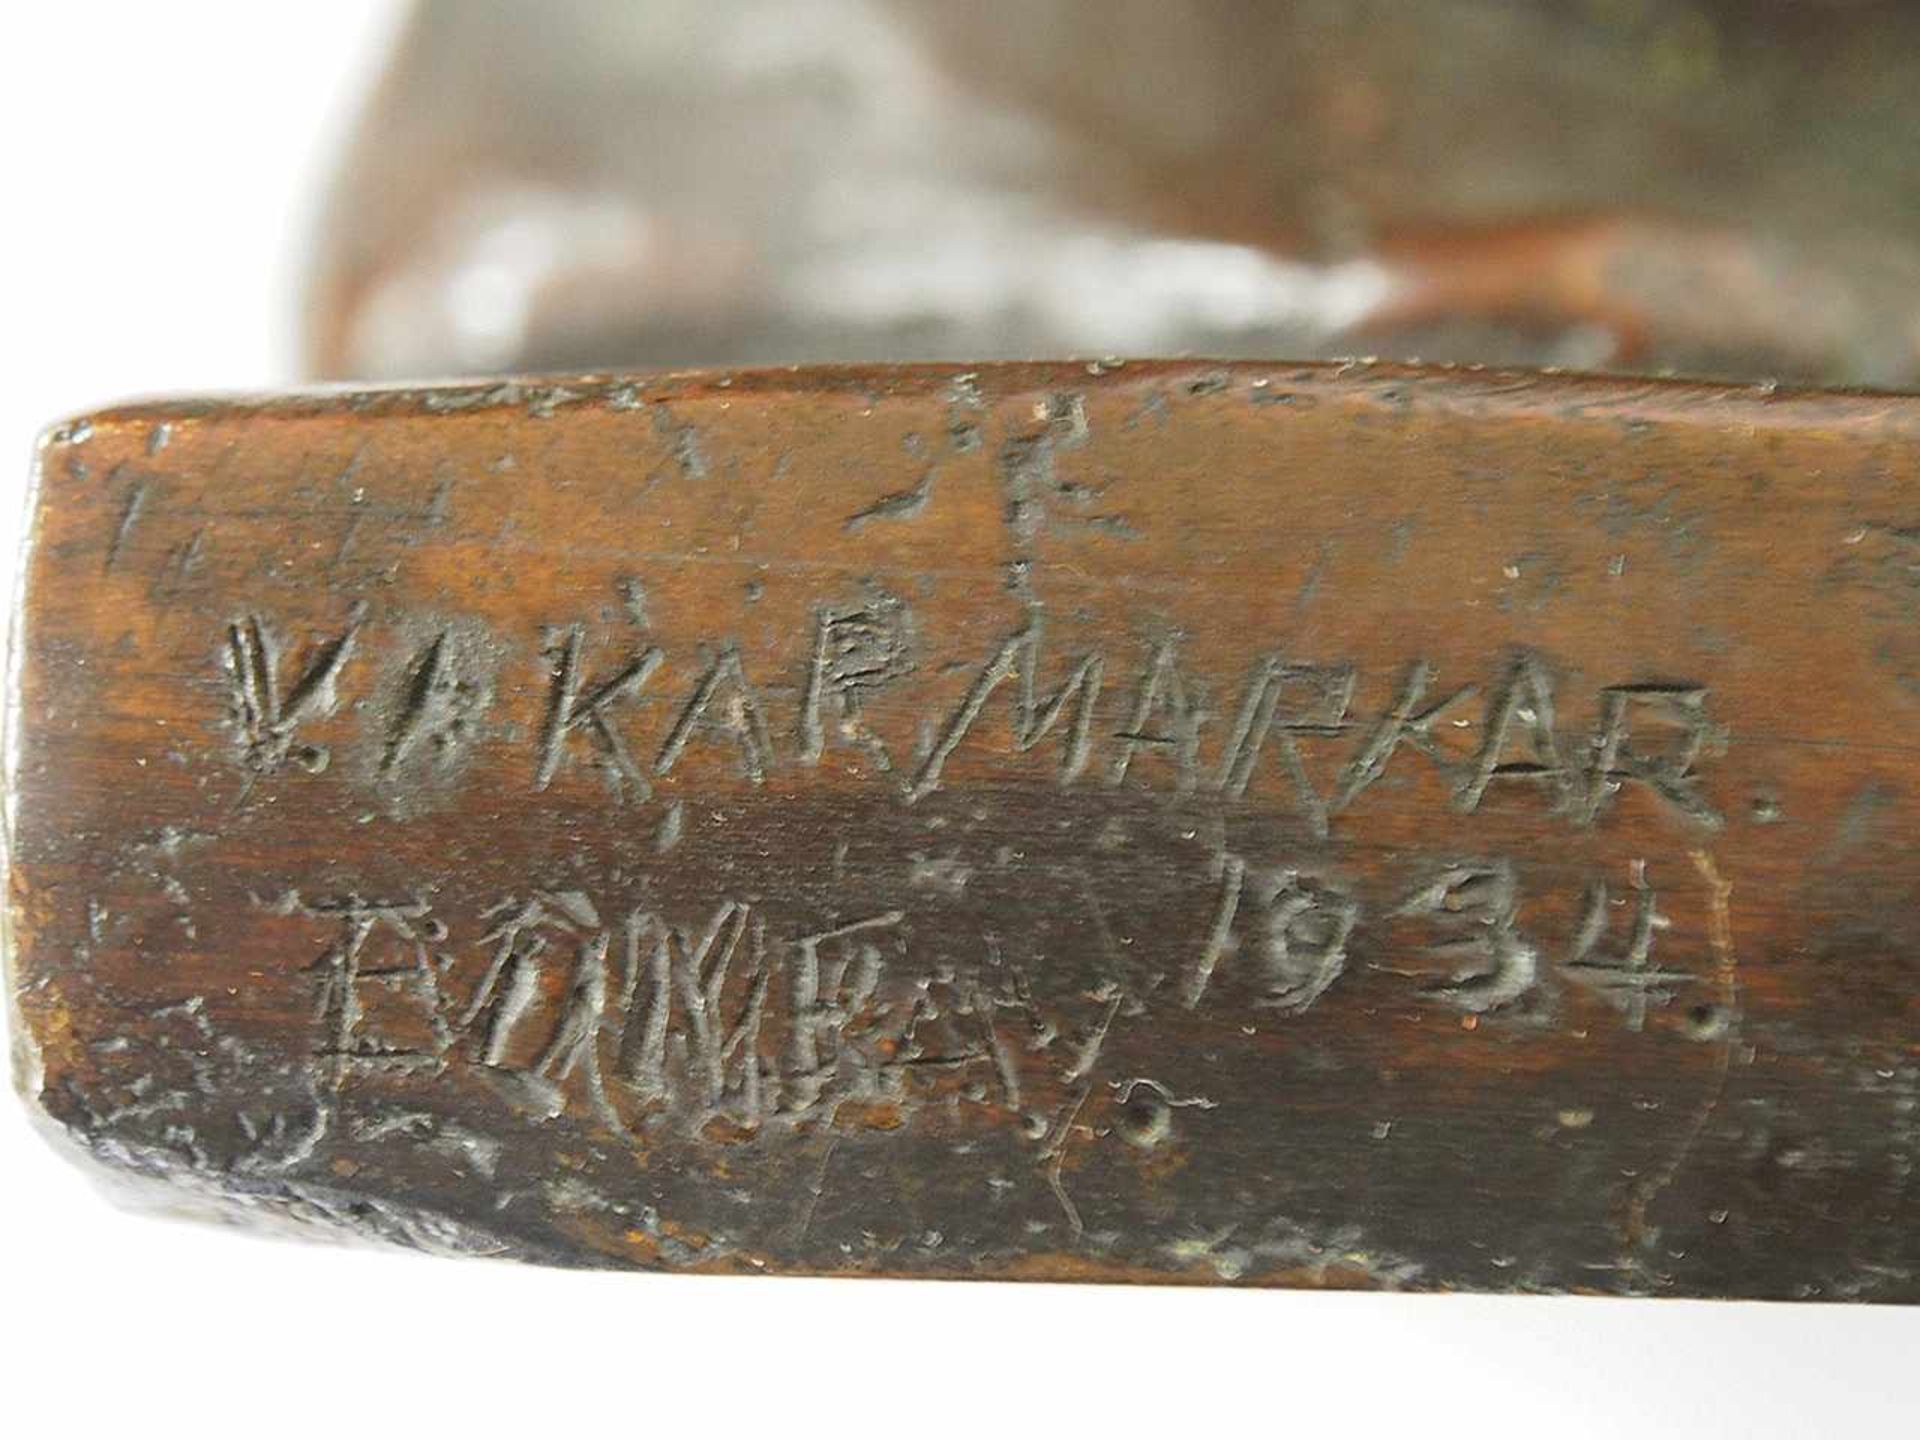 KARMAKAR, V.P.1891-1966InderBronze, signiert und datiert 1934 sowie bezeichnet "Bombay" auf der - Bild 2 aus 3